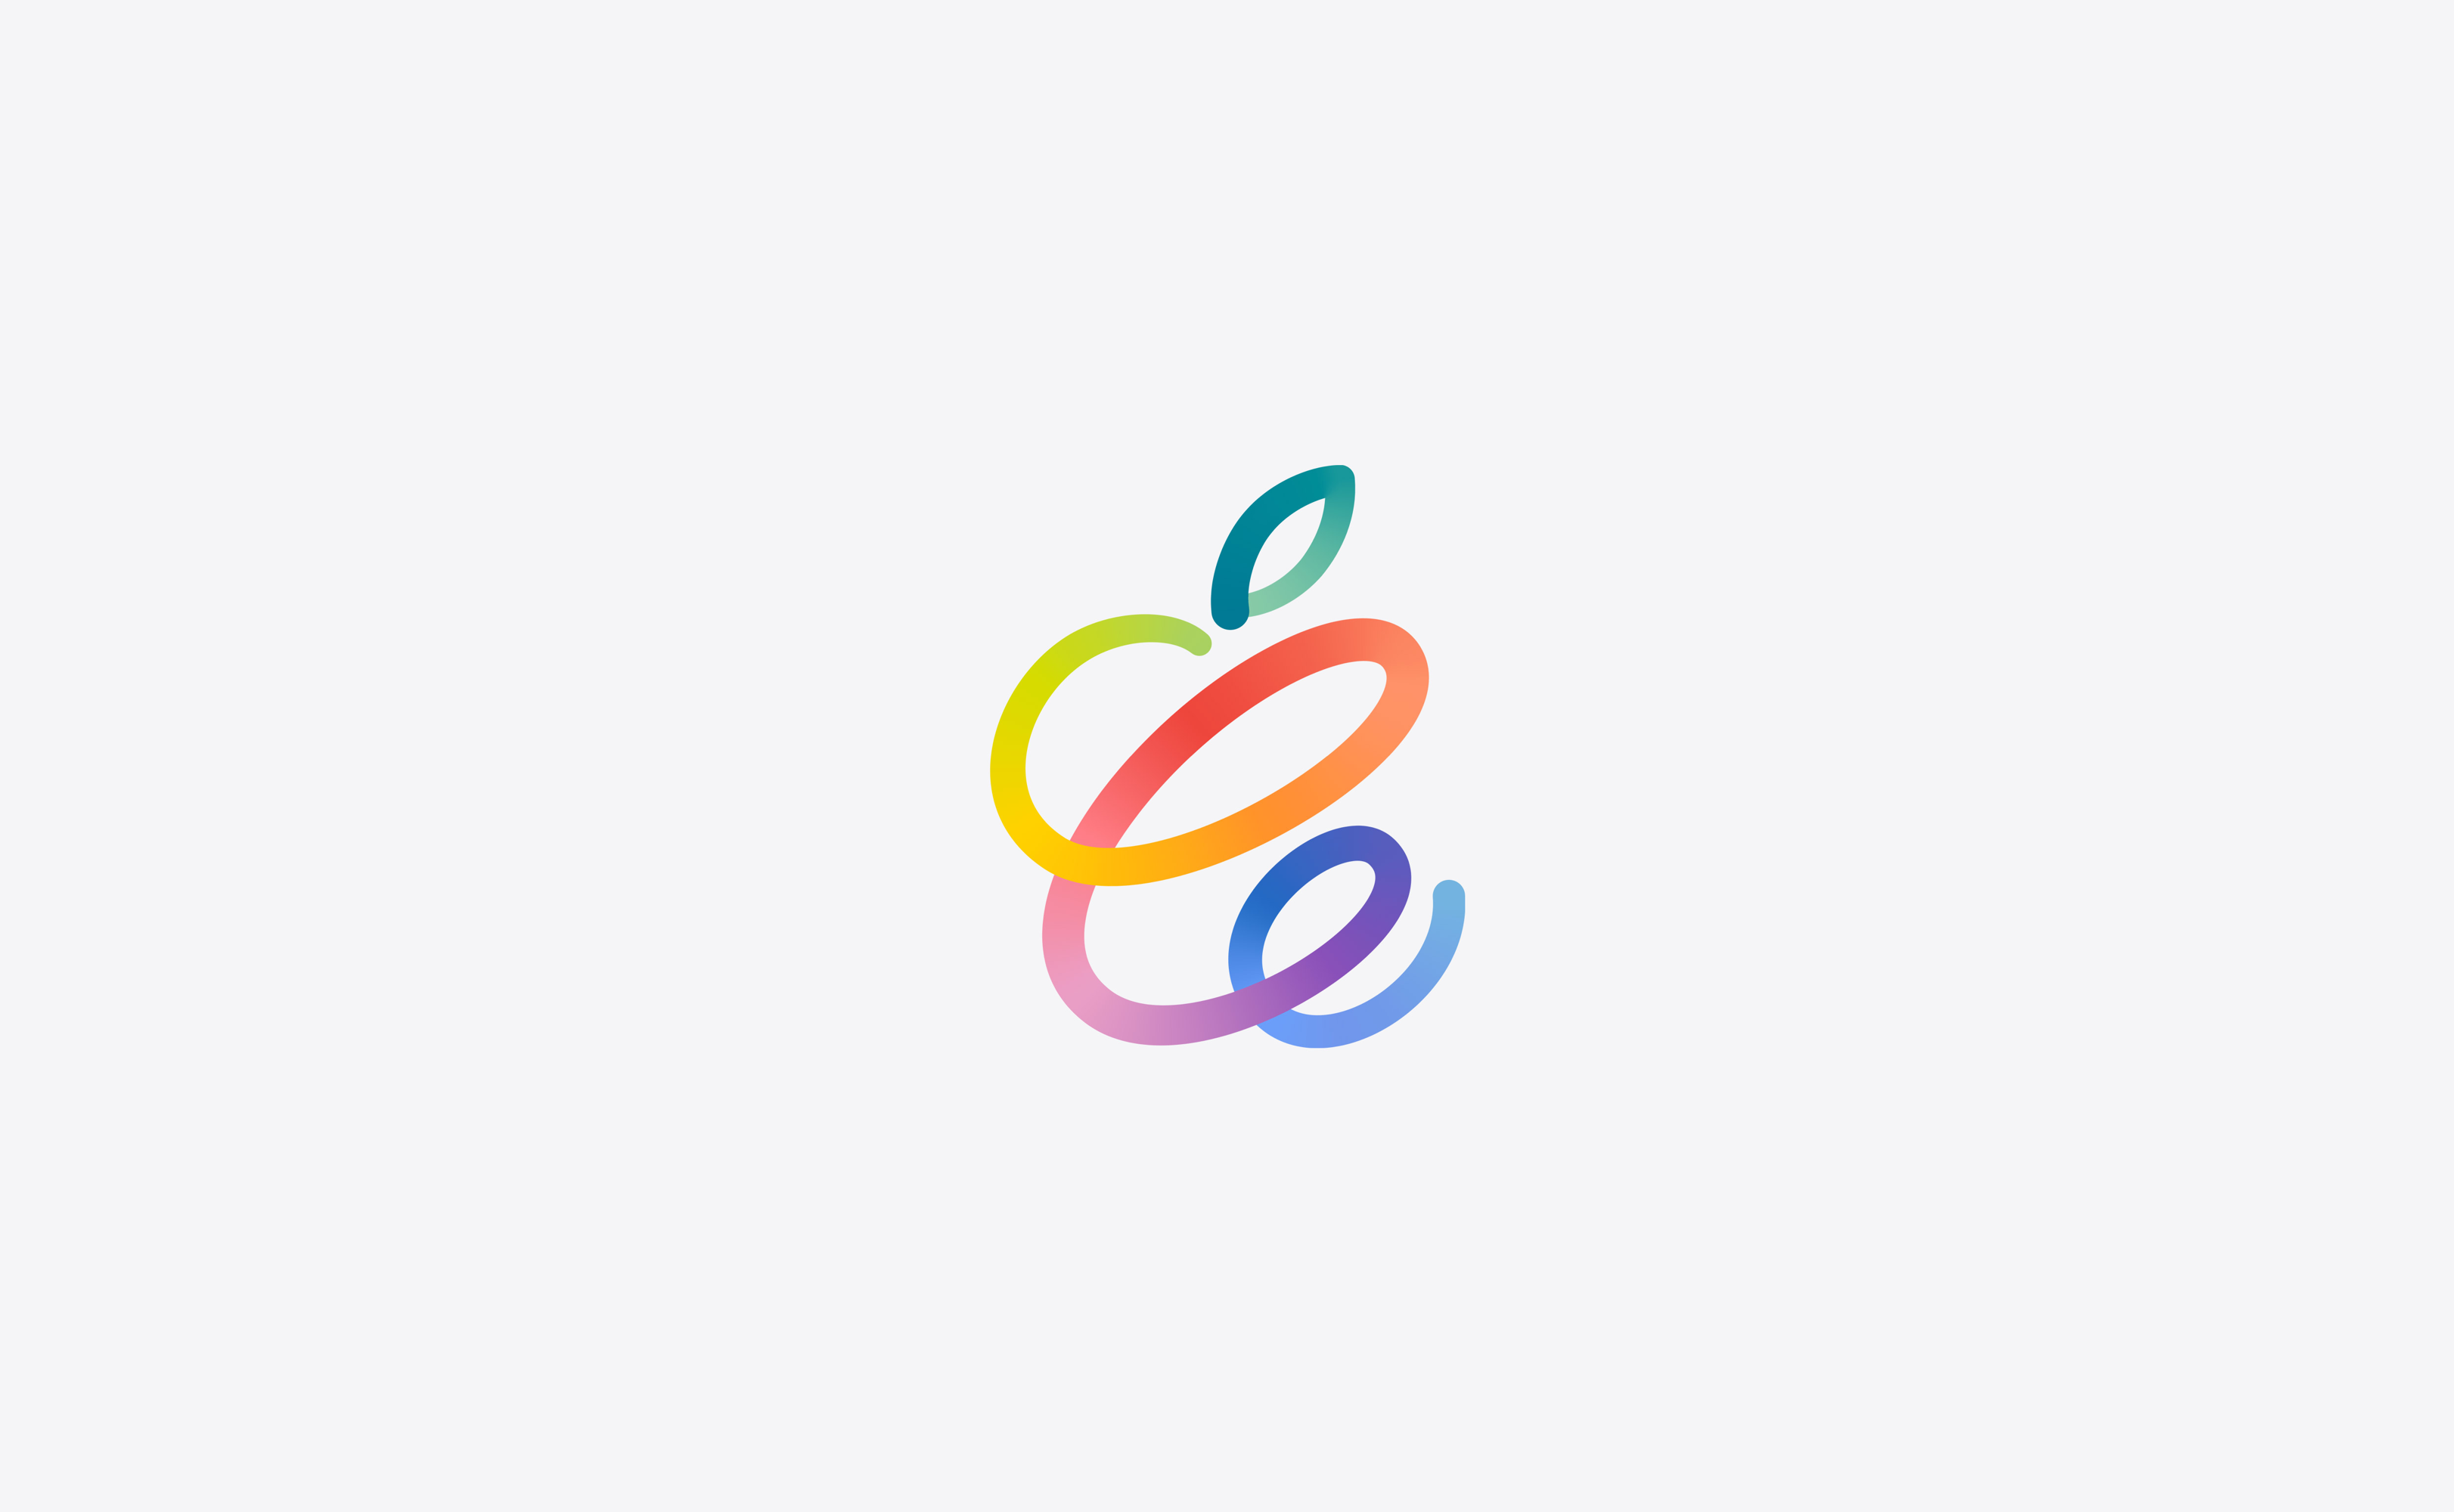 2021苹果春季发布会壁纸下载 五颜六色灵动线条